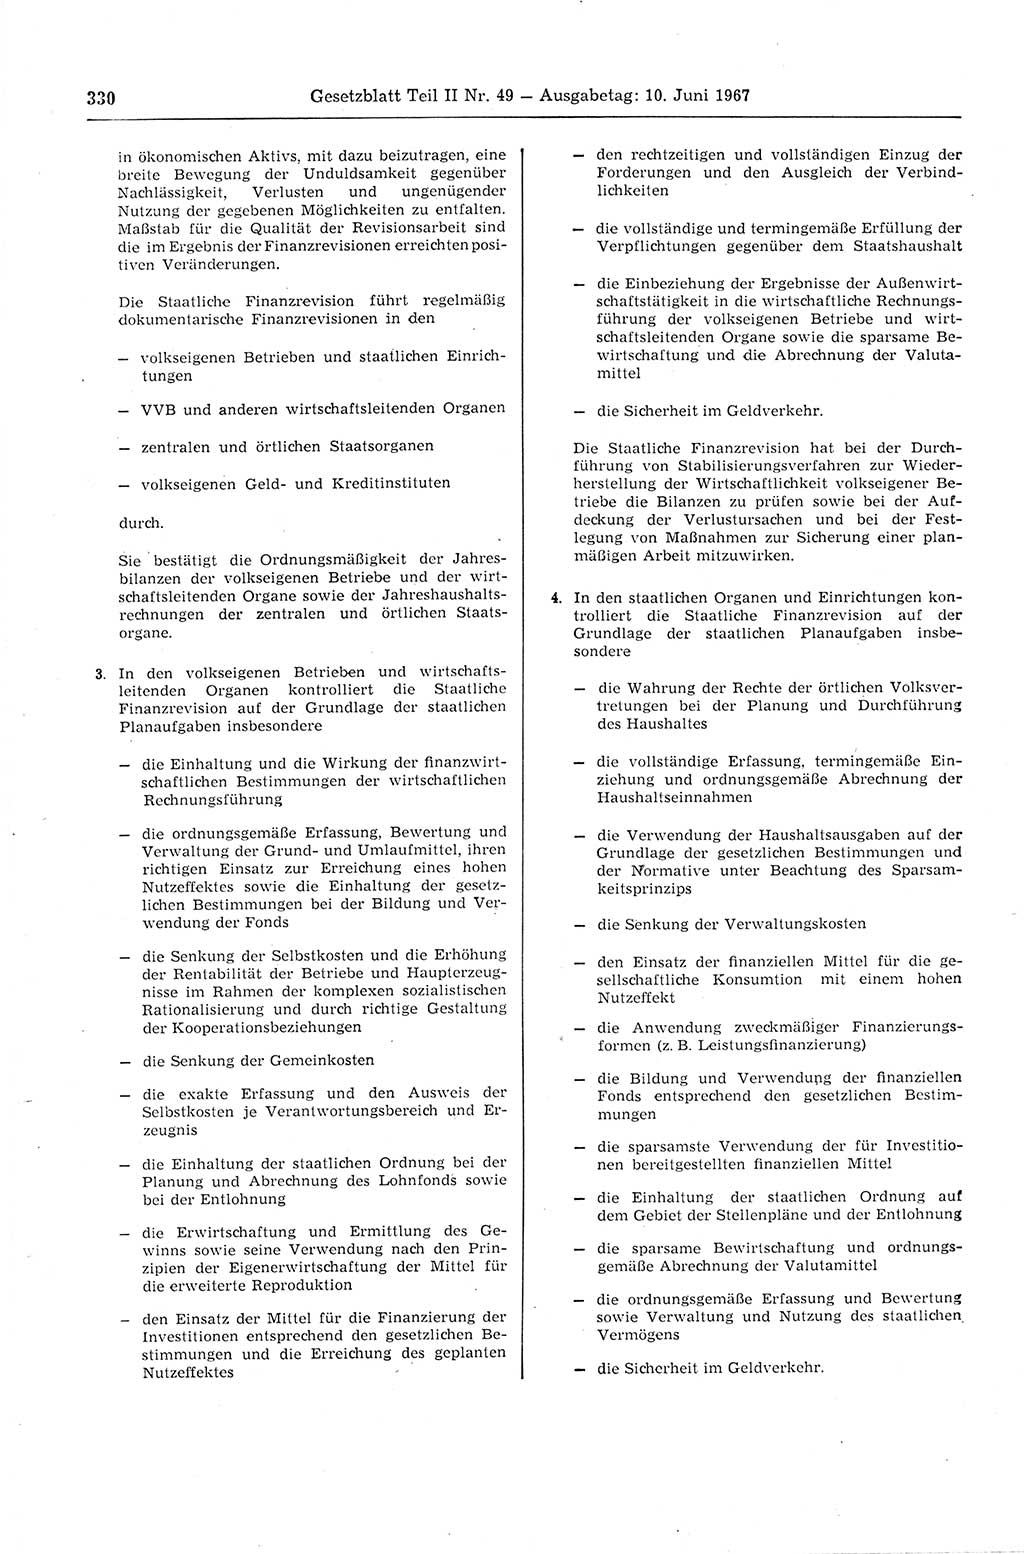 Gesetzblatt (GBl.) der Deutschen Demokratischen Republik (DDR) Teil ⅠⅠ 1967, Seite 330 (GBl. DDR ⅠⅠ 1967, S. 330)